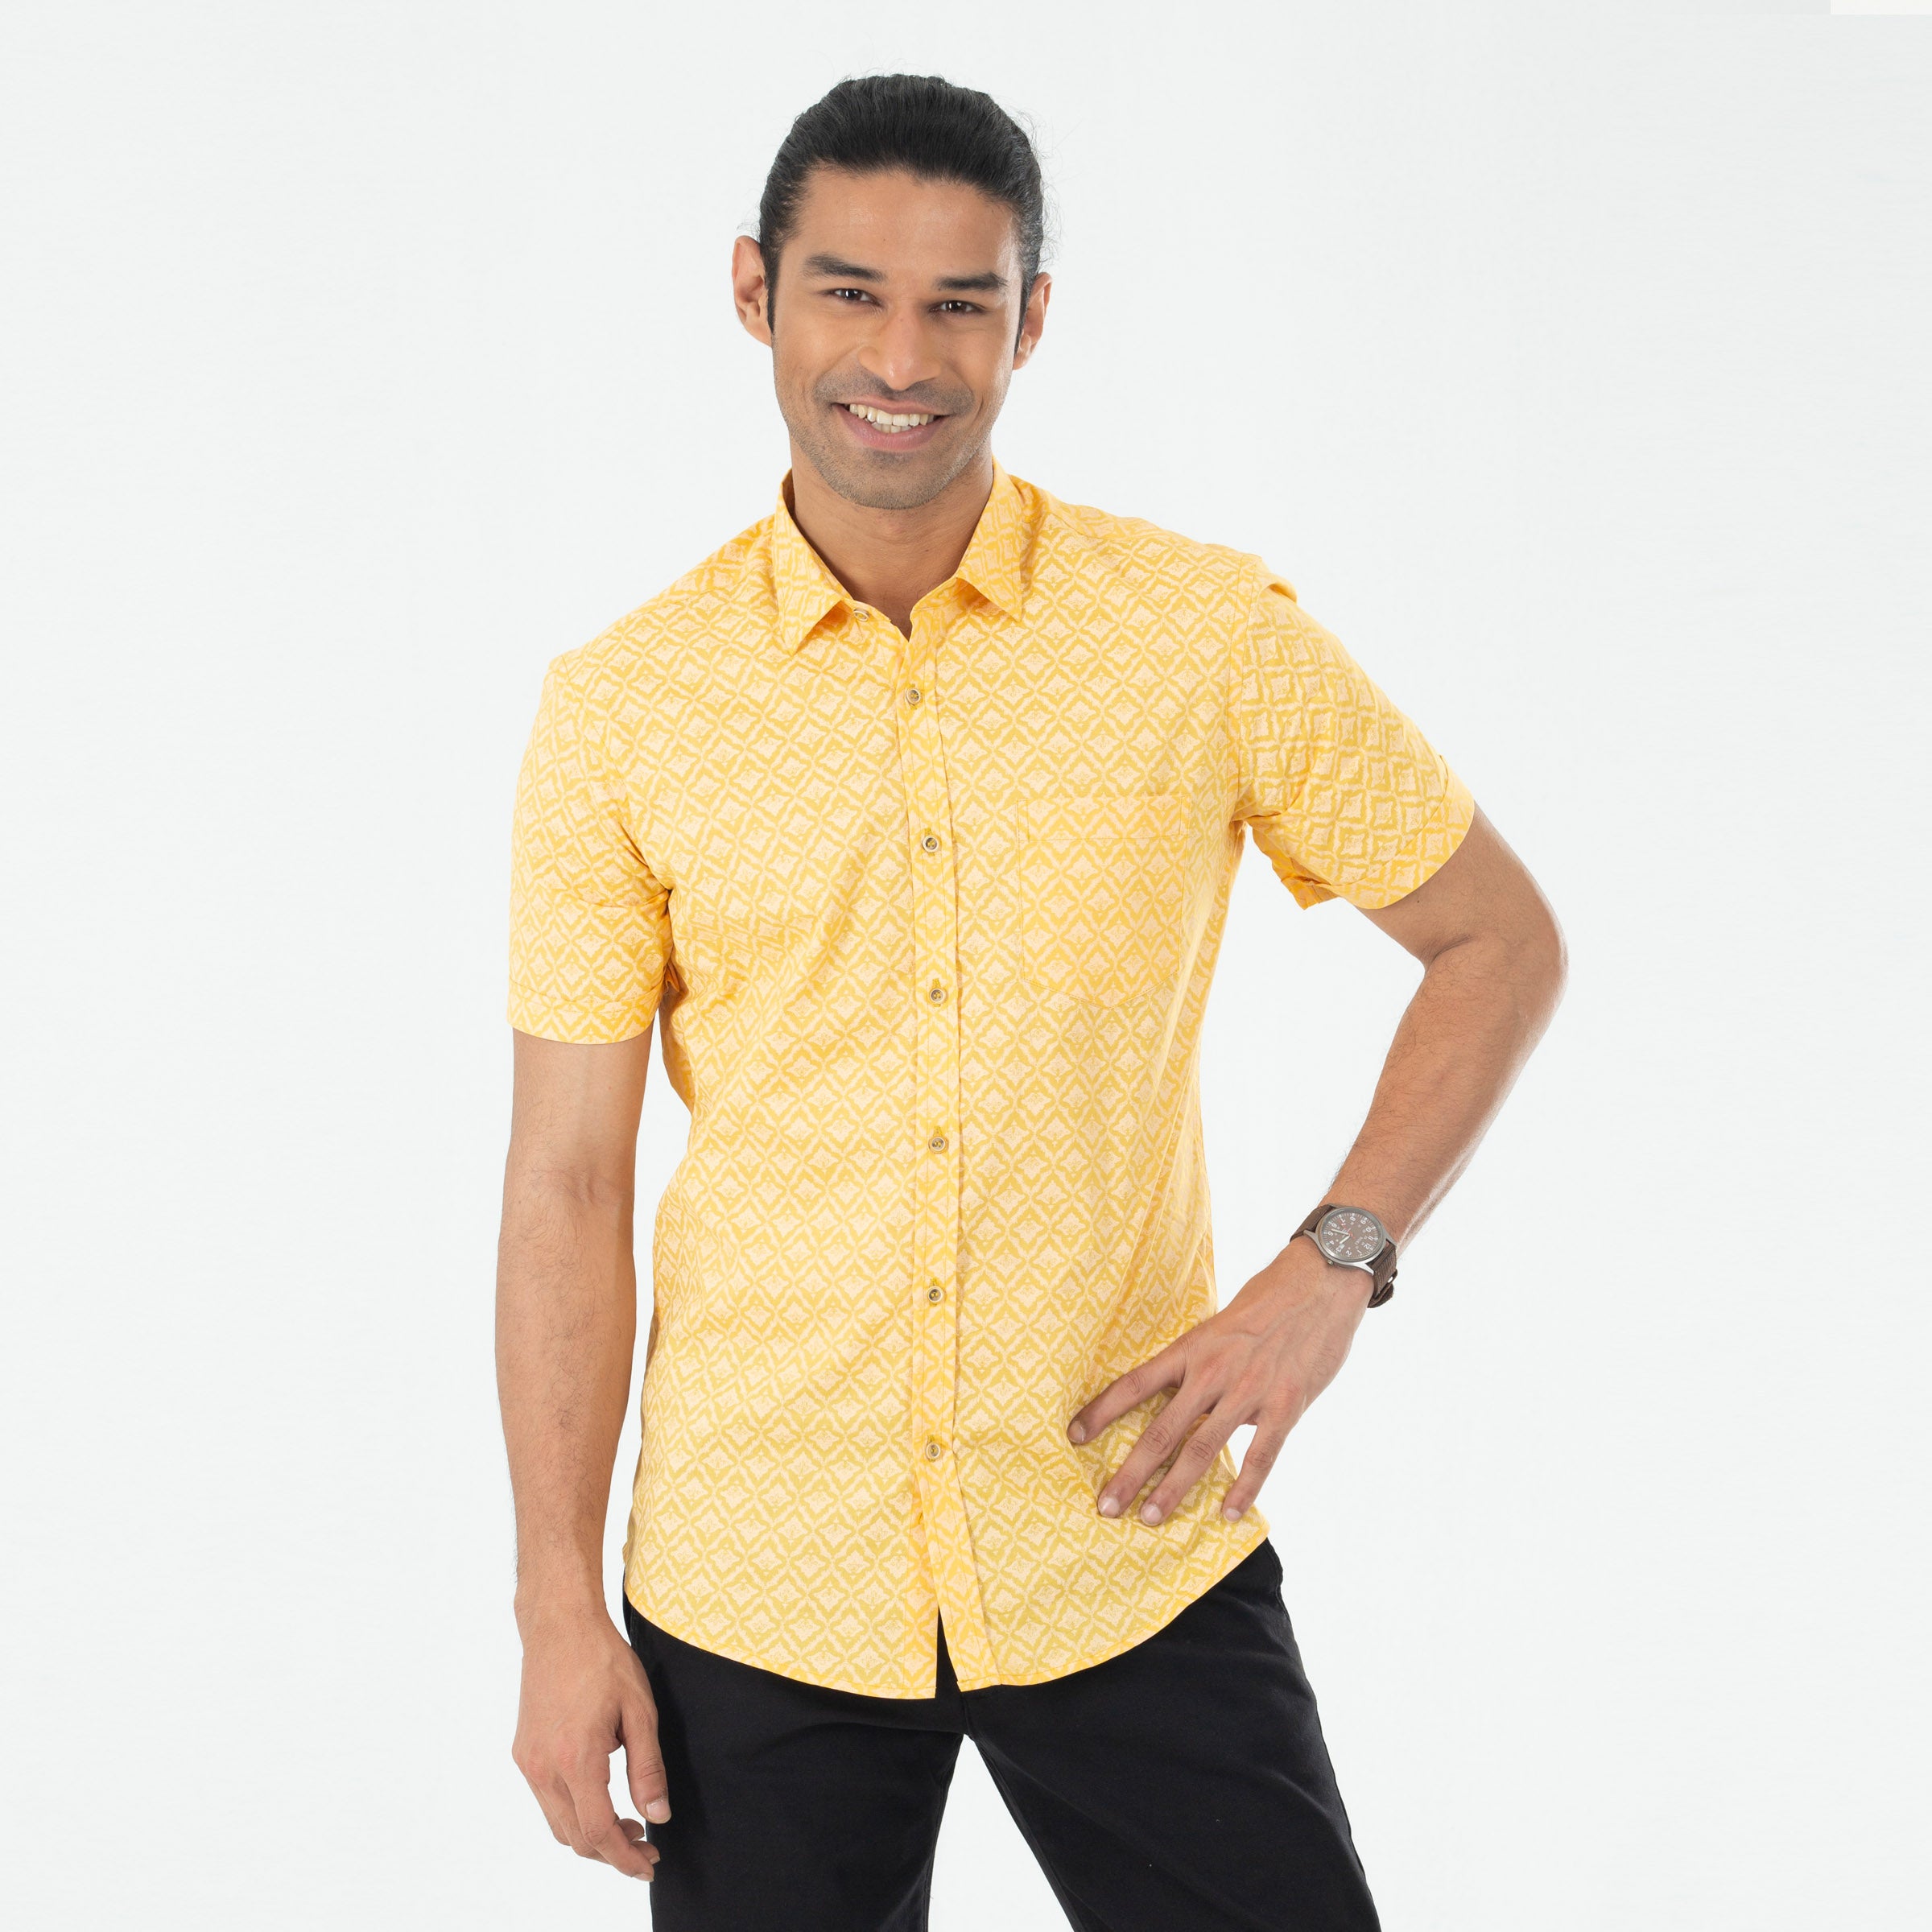 Casual Printed Half Shirt - Mustard Yellow